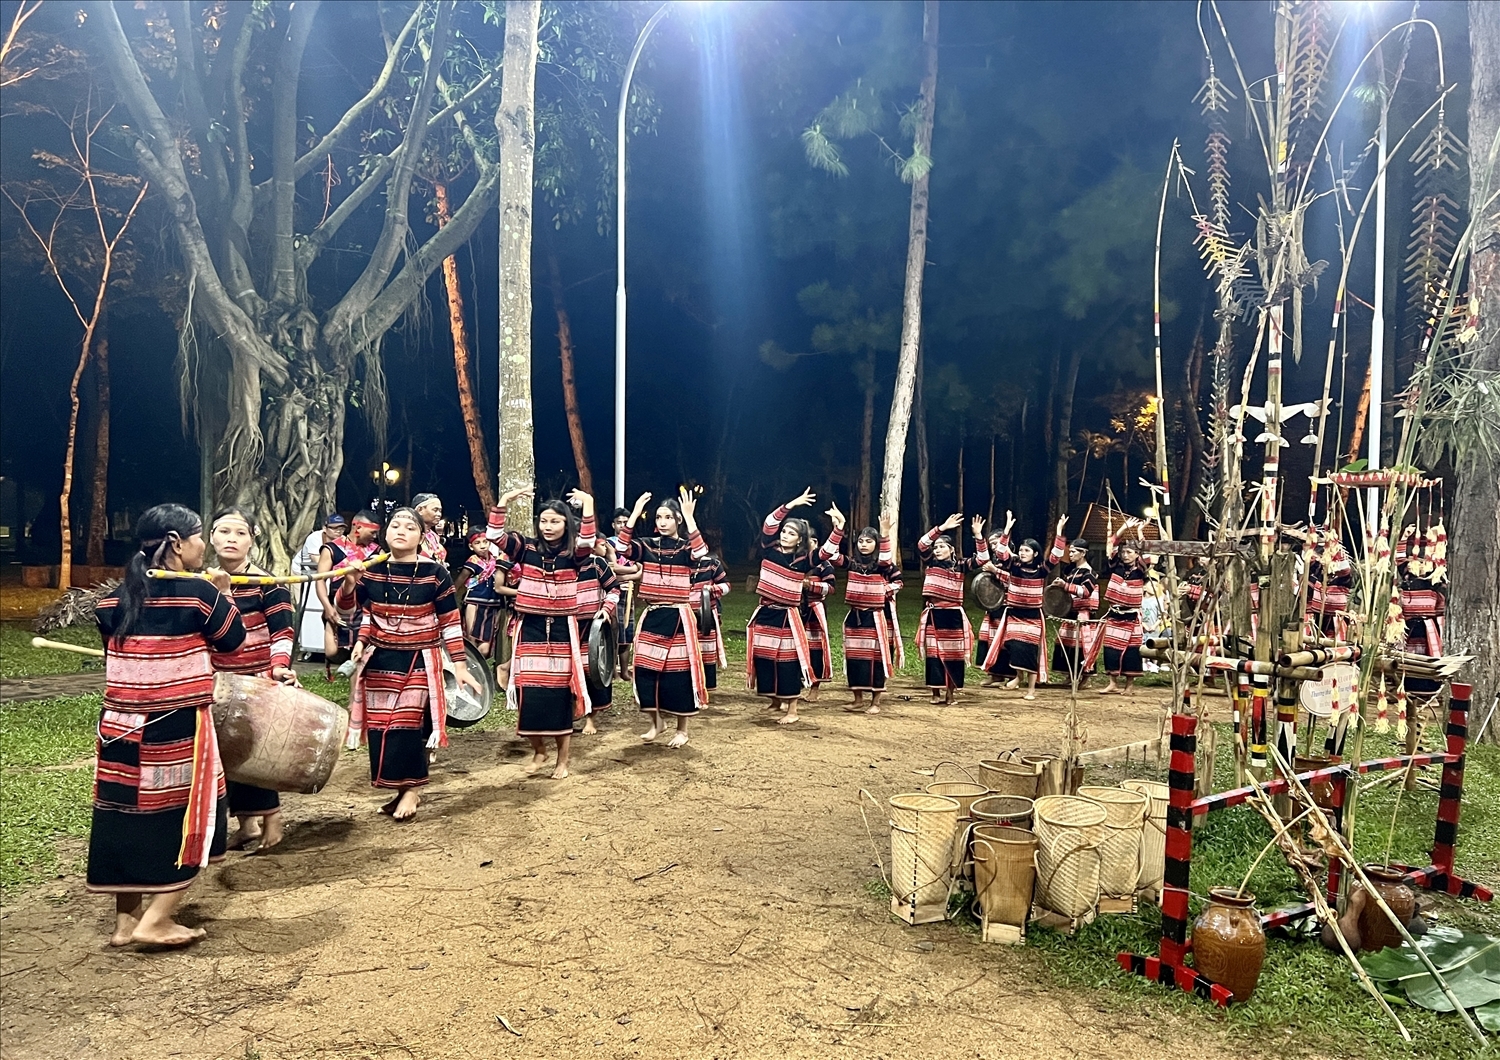 Đội chiêng nữ làng Leng (xã Tơ Tung, huyện Kbang) trình diễn cồng chiêng tại Chương trình “Cồng chiêng cuối tuần - thưởng thức và trải nghiệm”